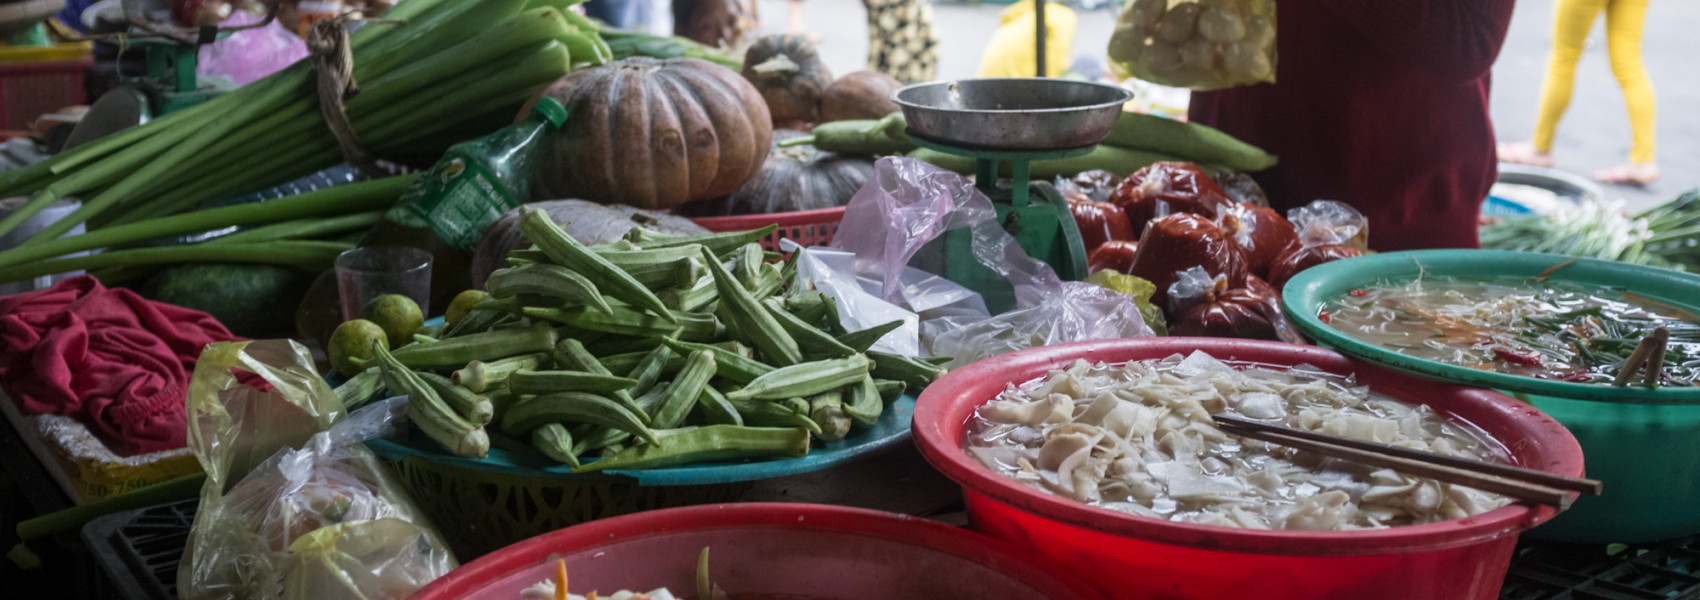 Déjà pho | A food tour of Vietnam